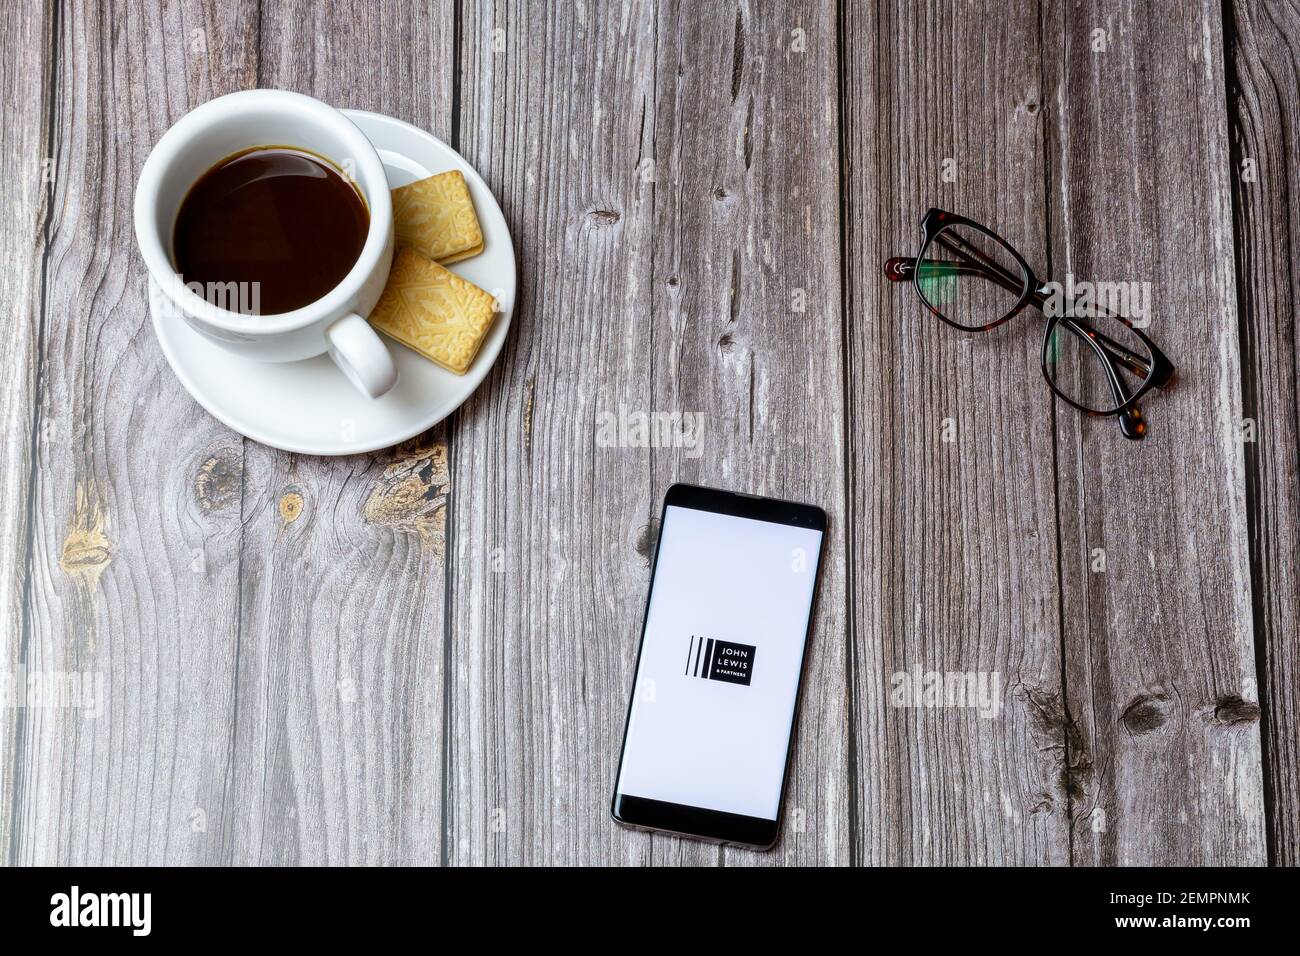 Ein Handy oder Handy auf einem Holztisch Mit der John Lewis and Partners App geöffnet neben Ein Kaffee Stockfoto